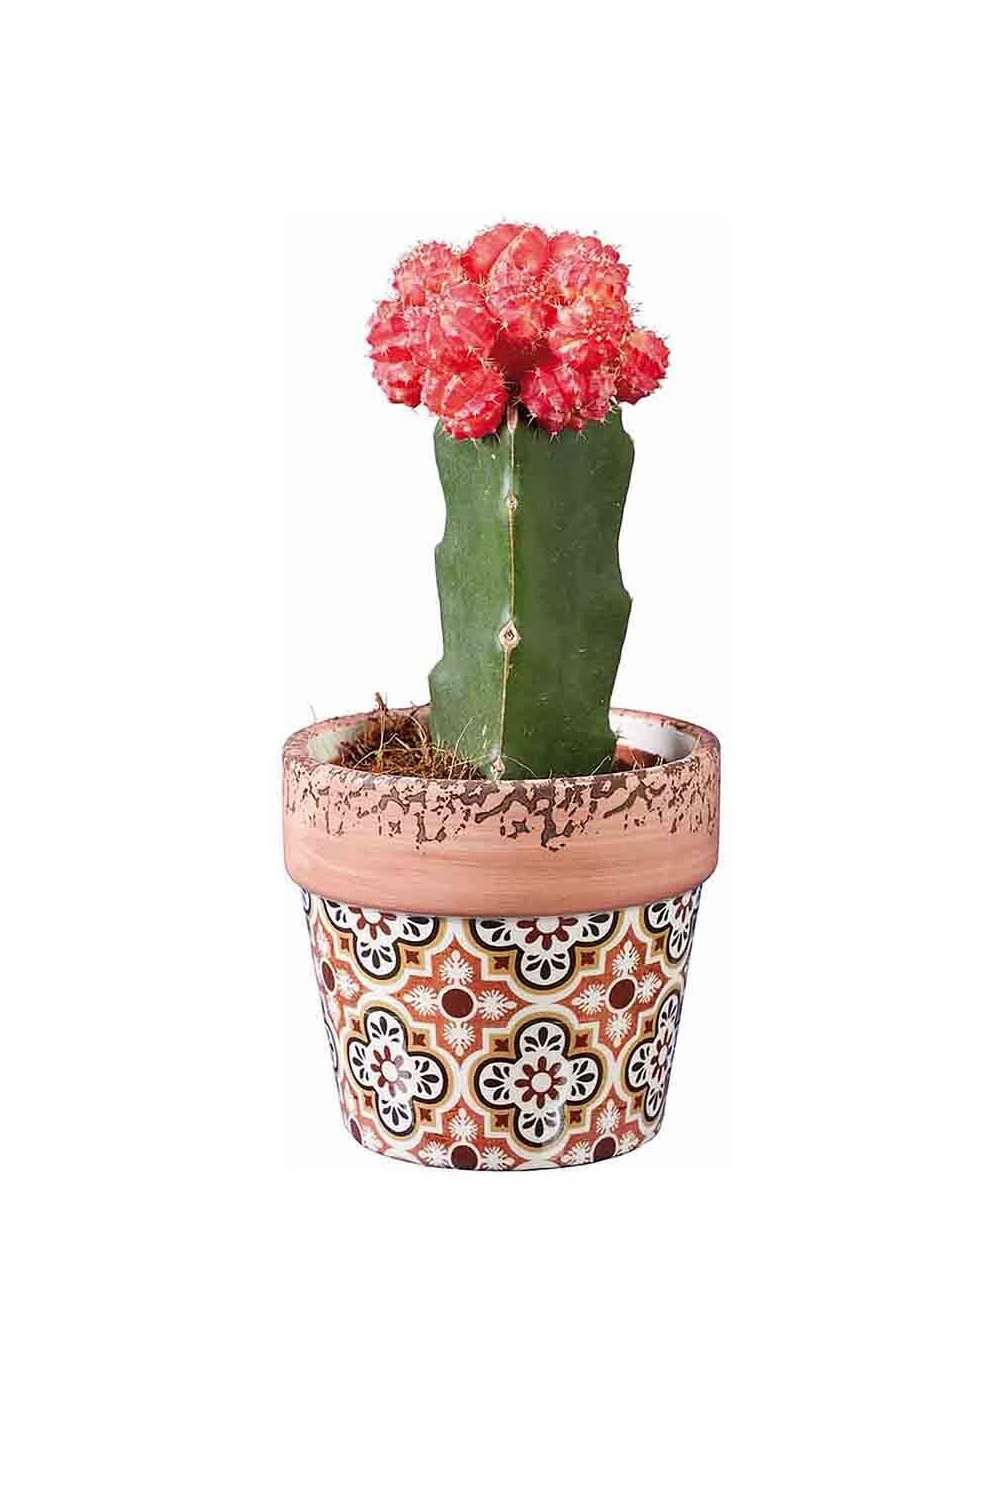 plantas veraniegas lidl y aldi cactus